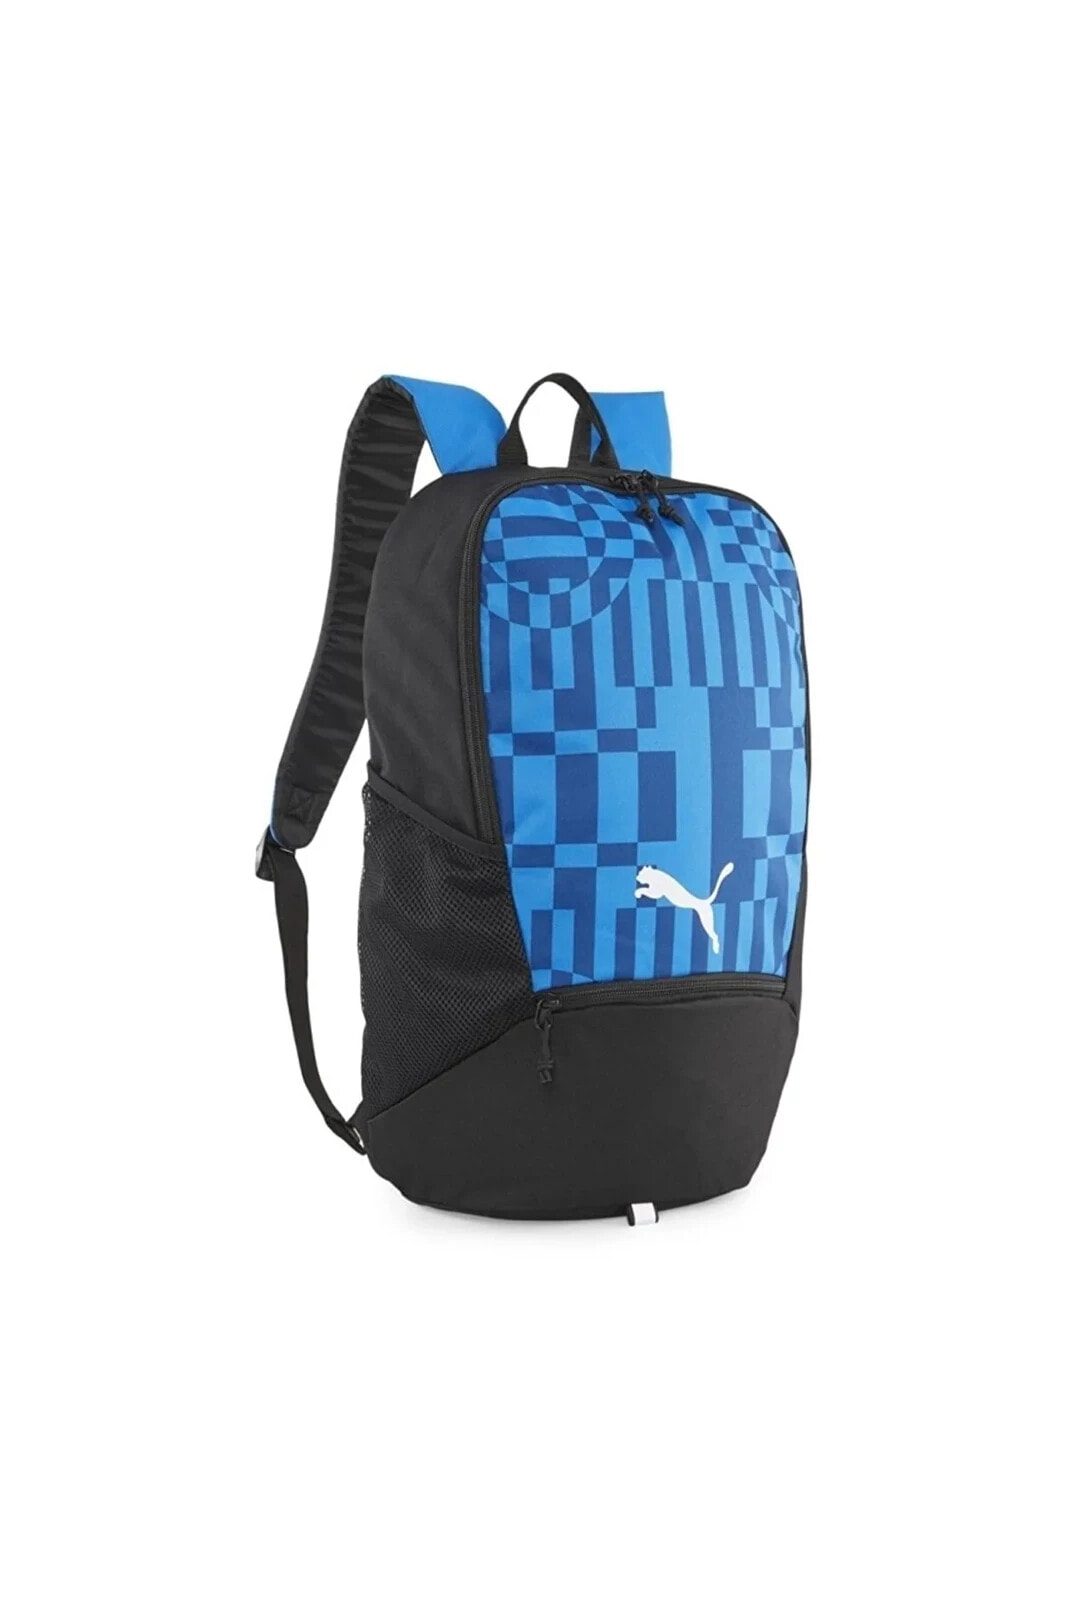 individualRISE Backpack Mavi Unisex Sırt Çantası 07991102 Mavi